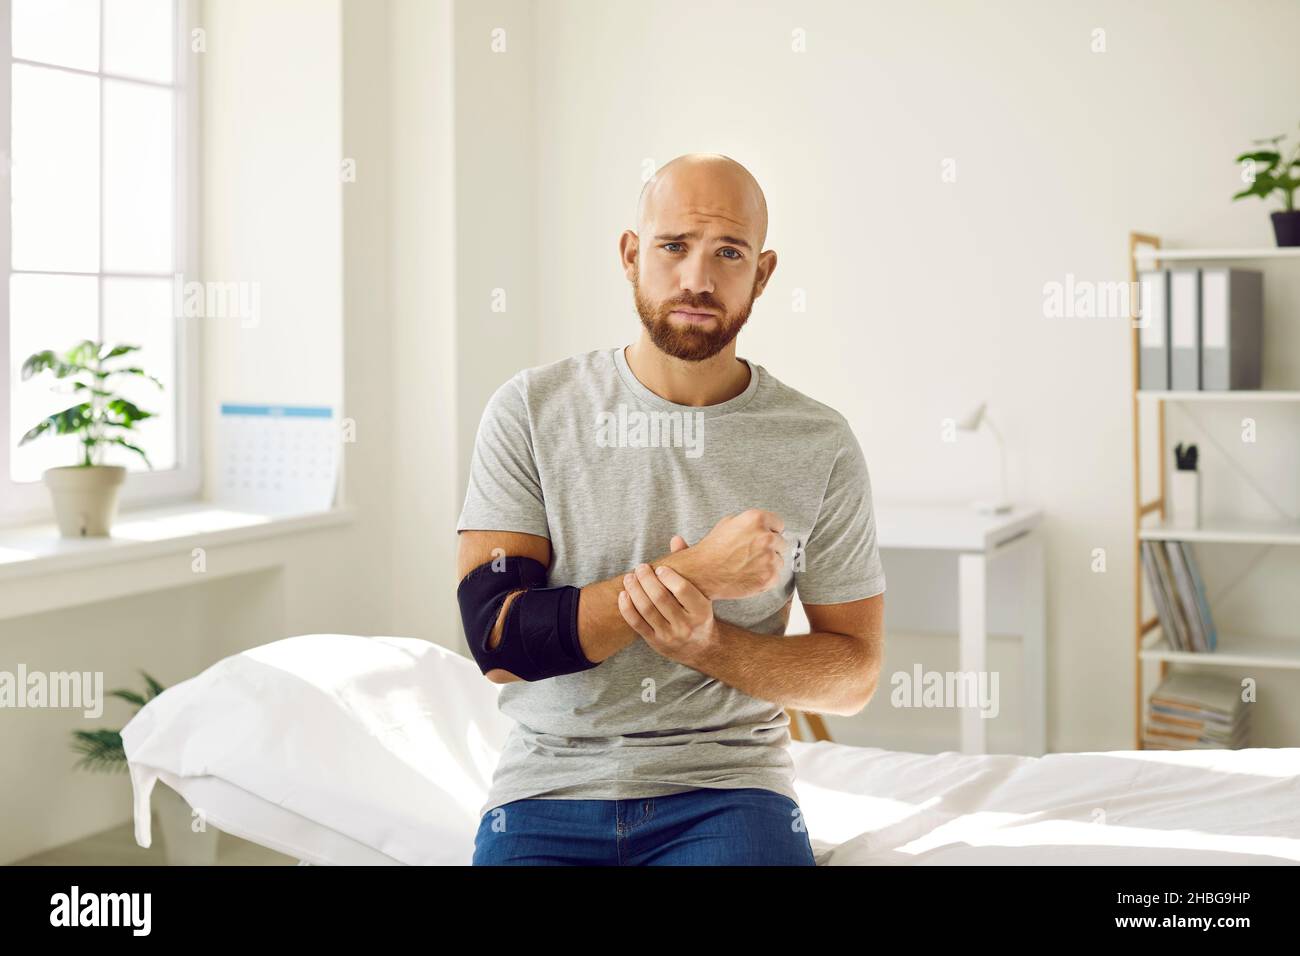 Ritratto di uomo triste che è costretto a indossare un bendaggio sul suo braccio dopo la frattura ossea. Foto Stock